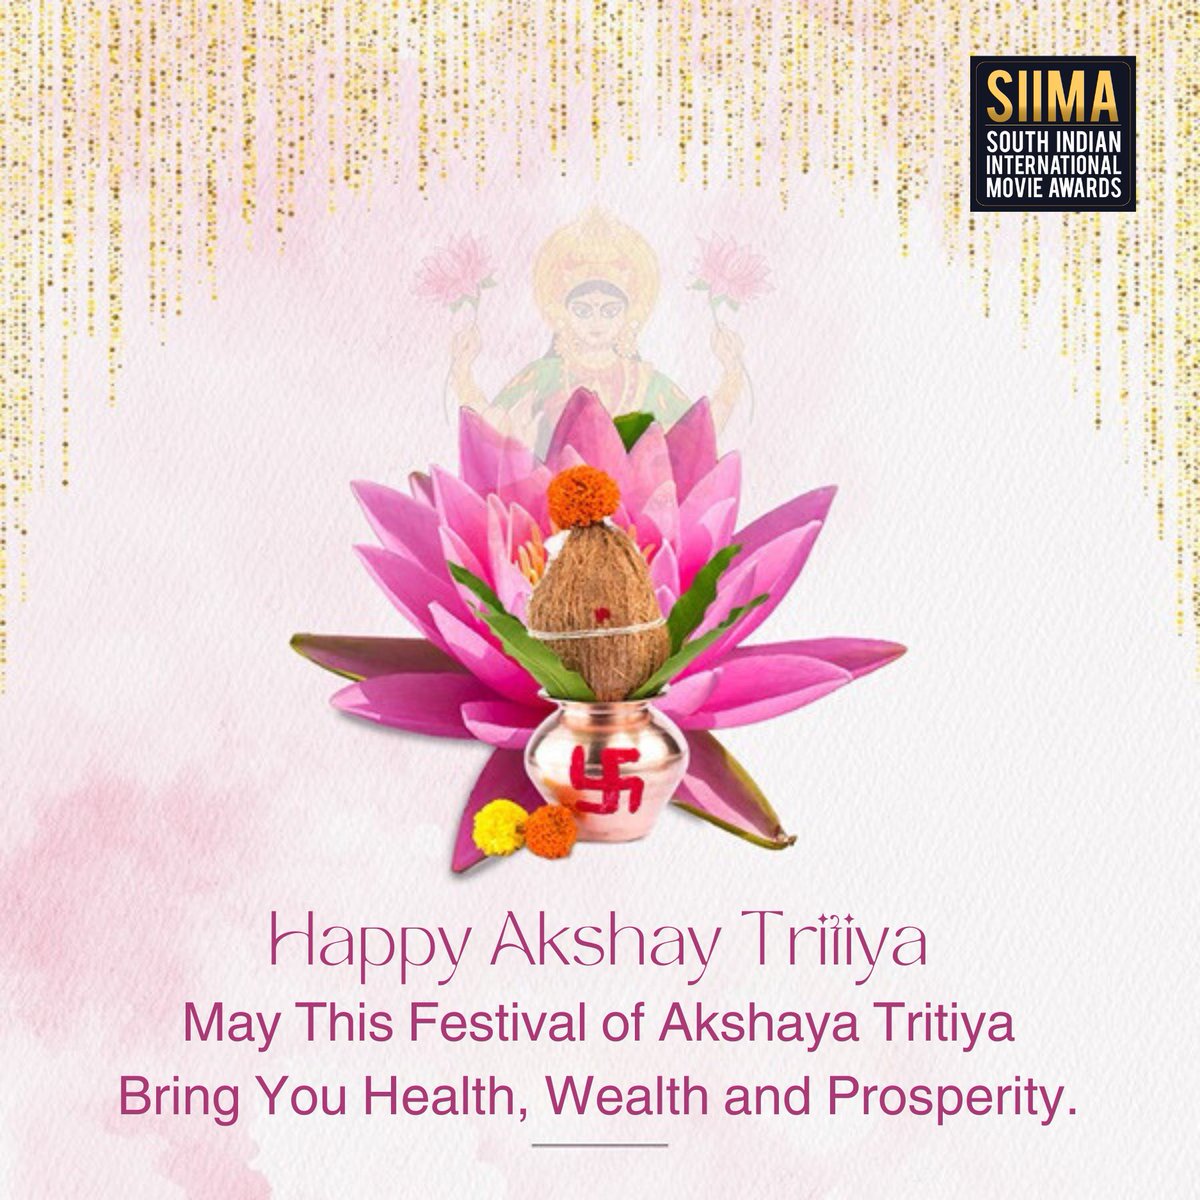 As we celebrate the auspicious occasion of Akshaya Tritiya, may your endeavors be blessed with everlasting prosperity and joy. Wishing you a wonderful Akshaya Tritiya from the SIIMA family! 💫 #AkshayaTritiya #Blessings #SIIMA